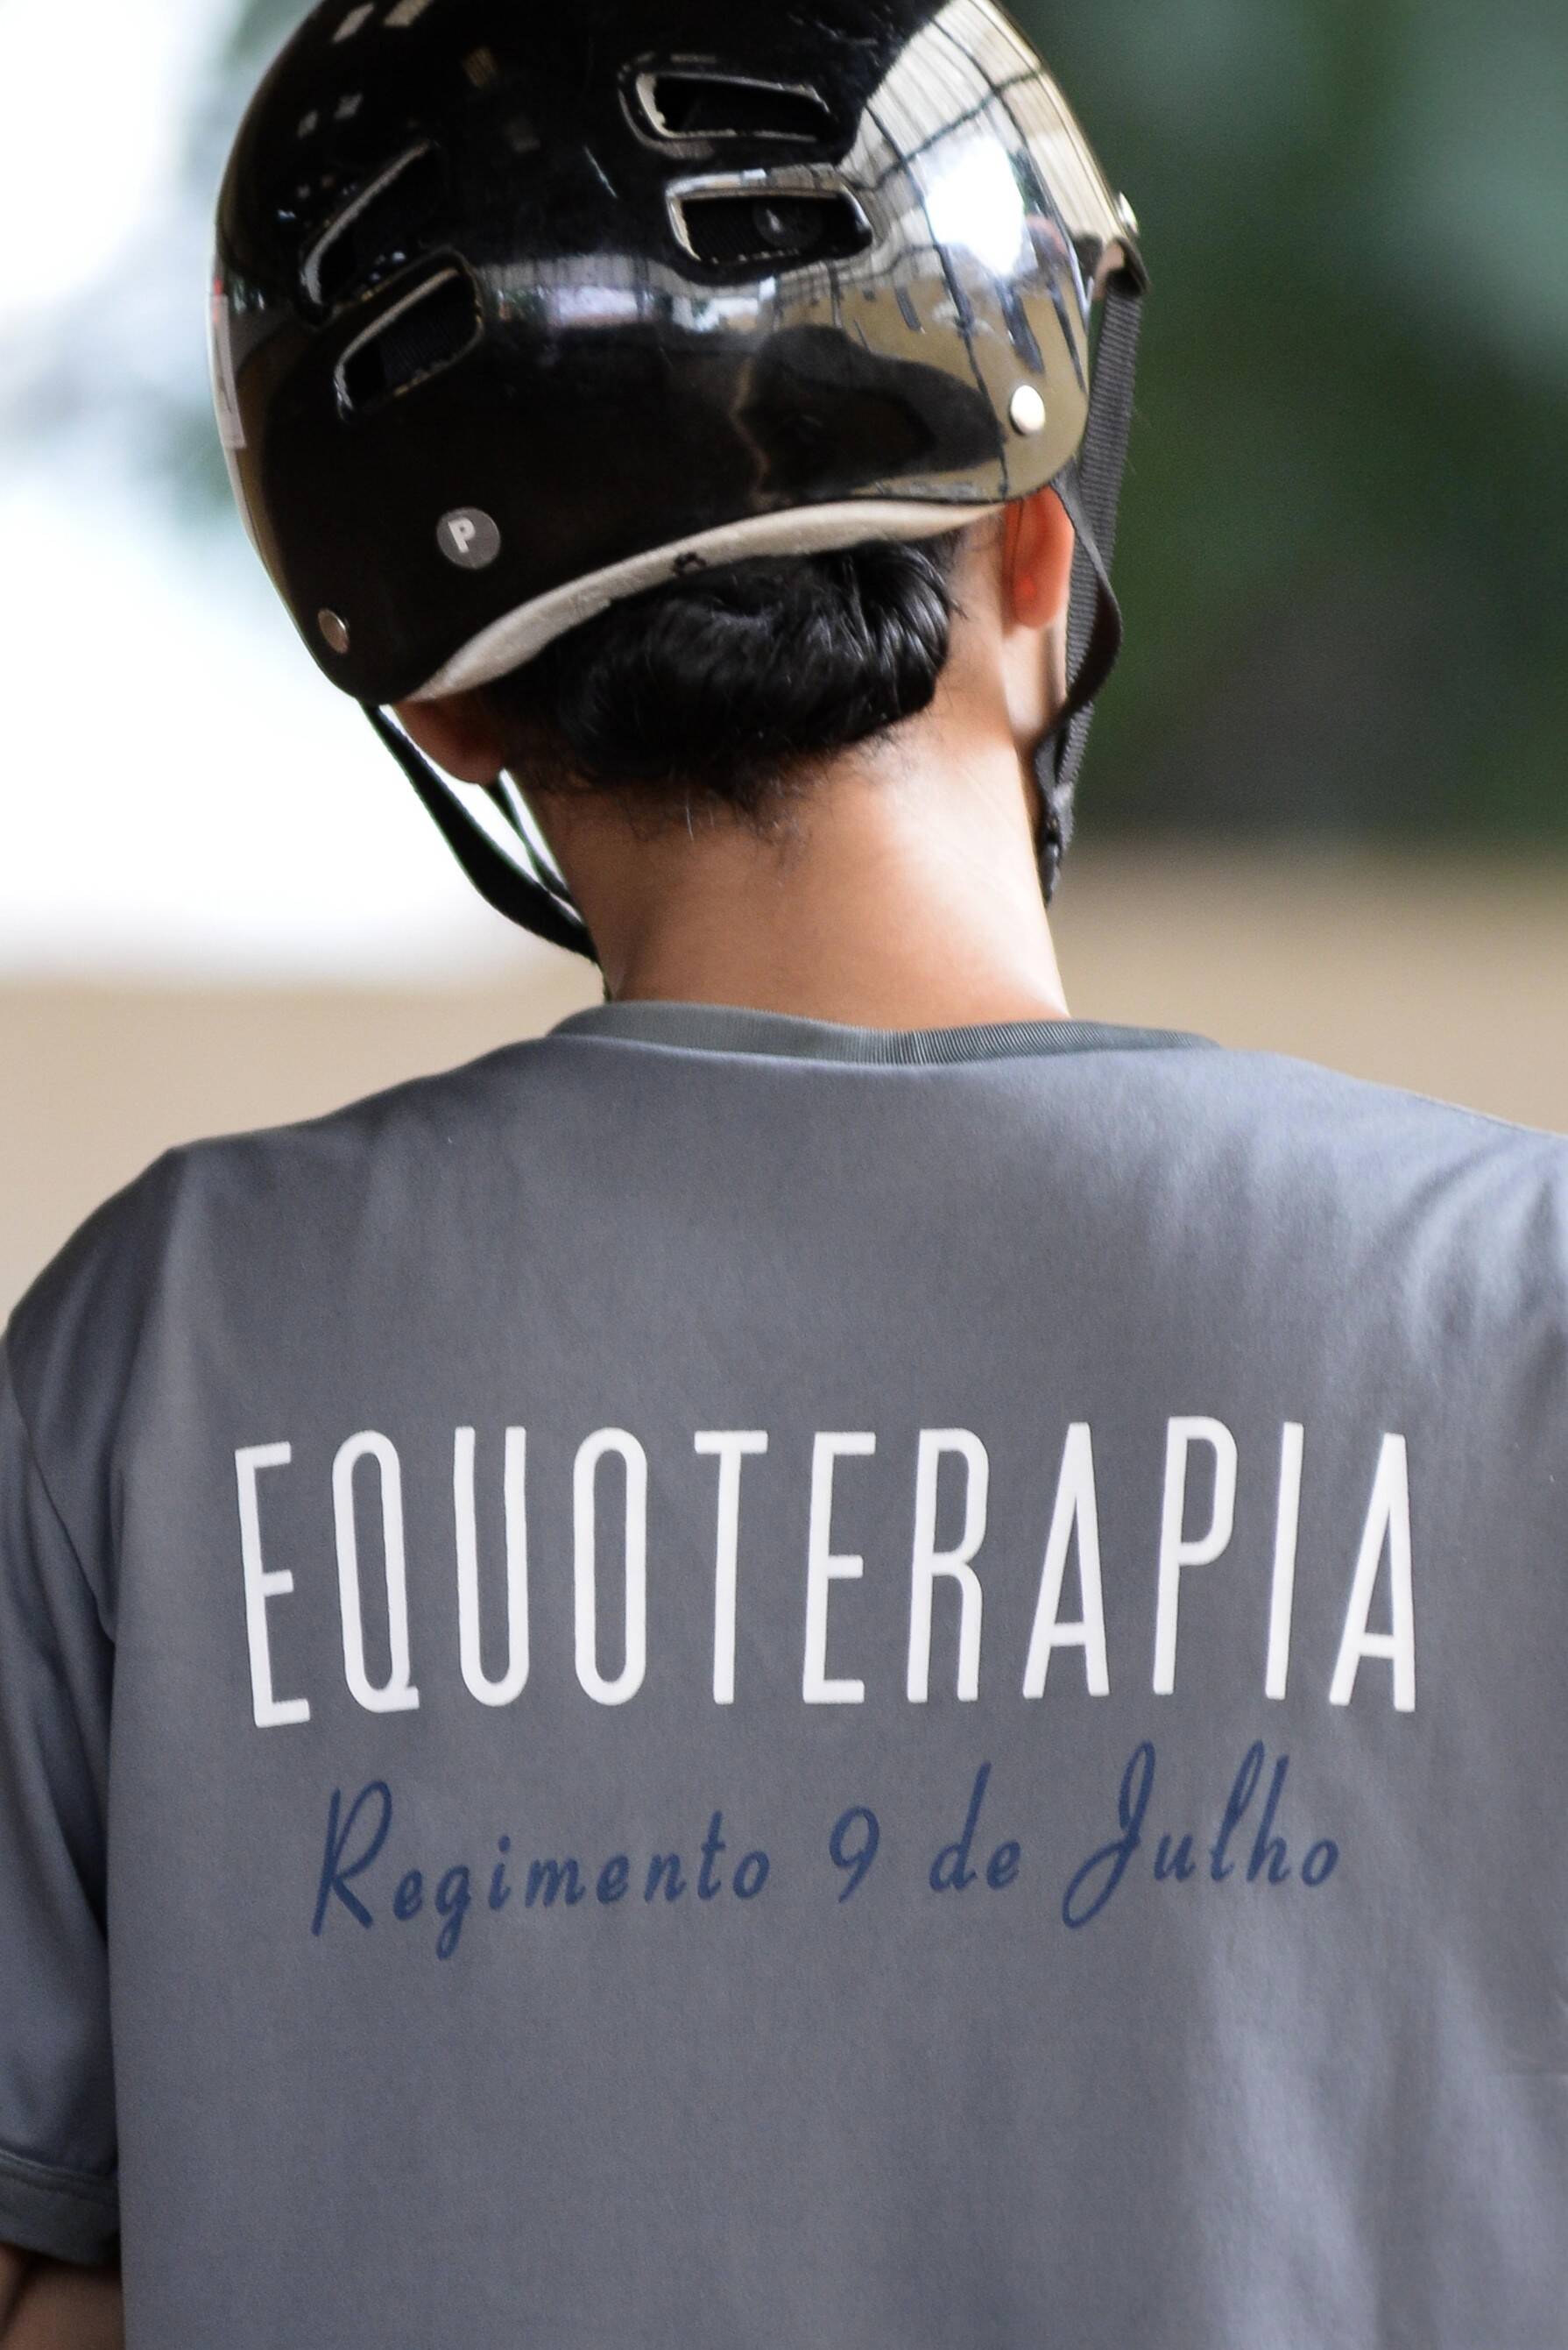 Programa de equoterapia desenvolvido pelo Regimento de Cavalaria 9 de Julho, Polícia Militar de São Paulo. Foto: Major Luis Augusto Pacheco Ambar - Comando de Choque, PMSP